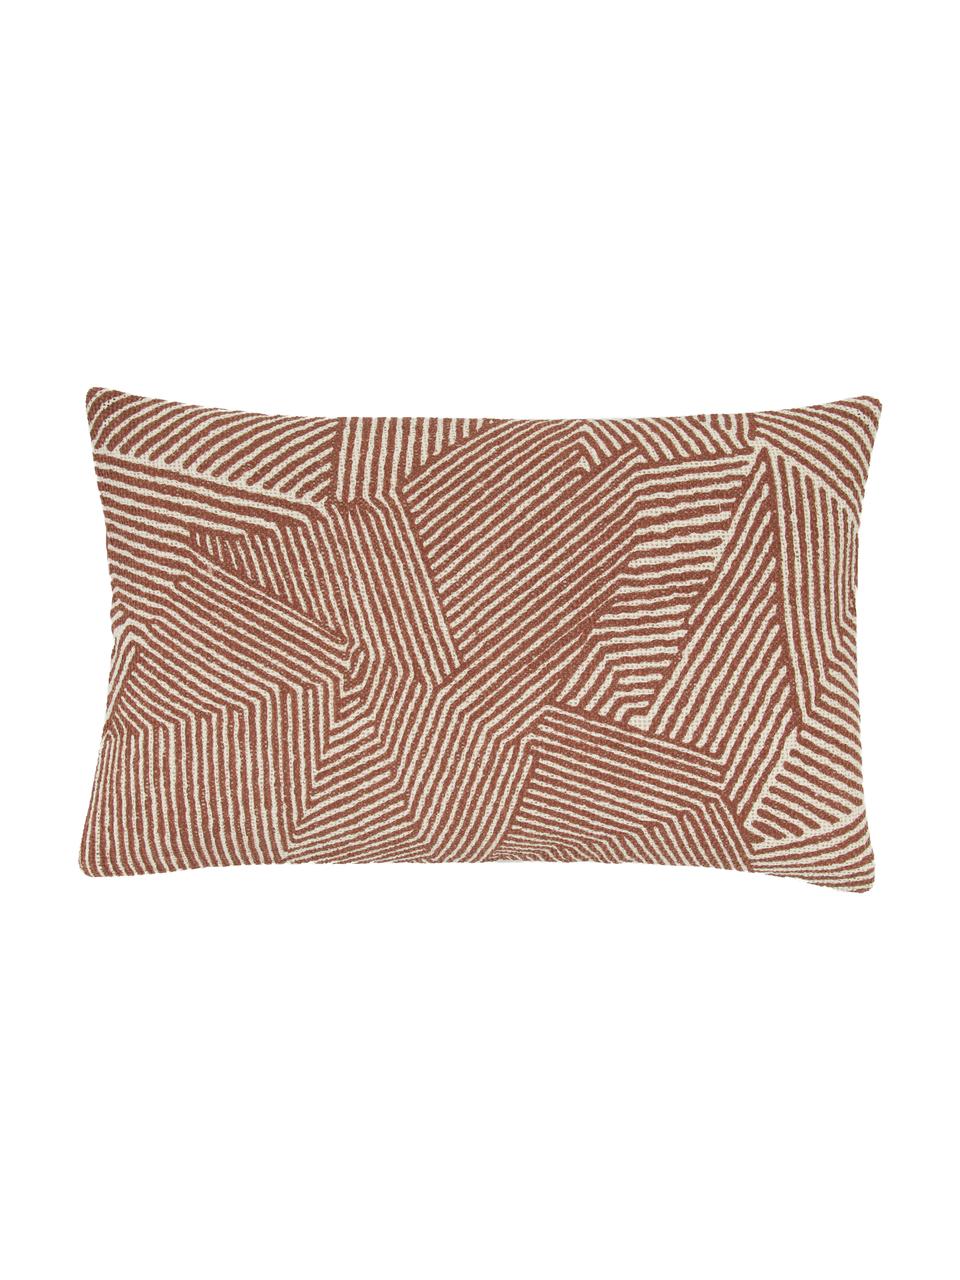 Kissenhülle Nadia mit grafischem Muster in Rostfarben, 100%  Baumwolle, Beige,Weiss,Rot, B 30 x L 50 cm